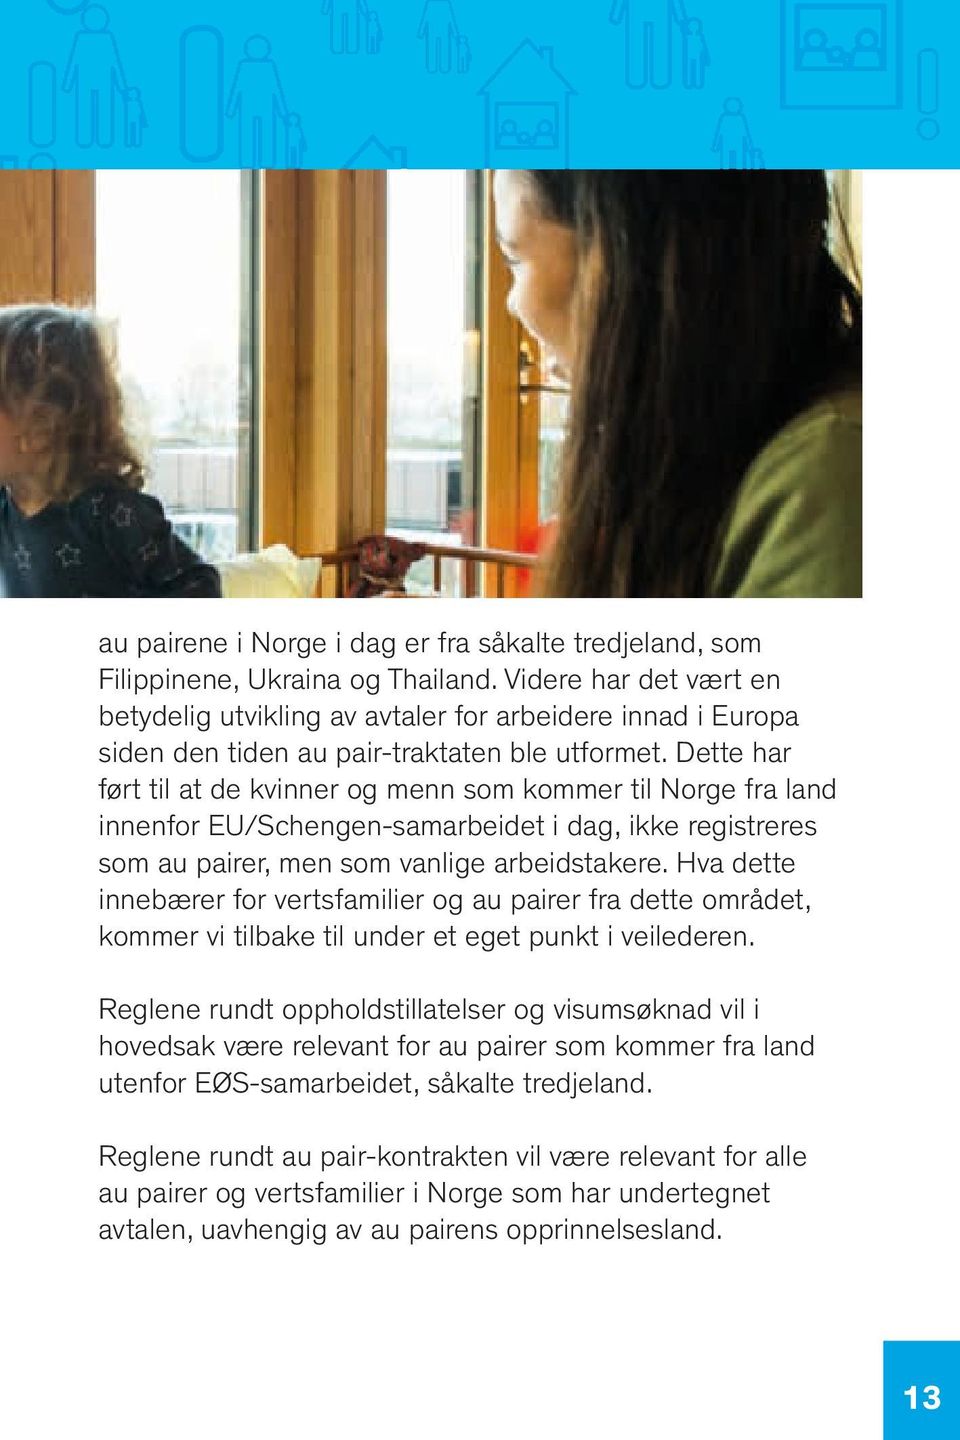 Dette har ført til at de kvinner og menn som kommer til Norge fra land innenfor EU/Schengen-samarbeidet i dag, ikke registreres som au pairer, men som vanlige arbeidstakere.